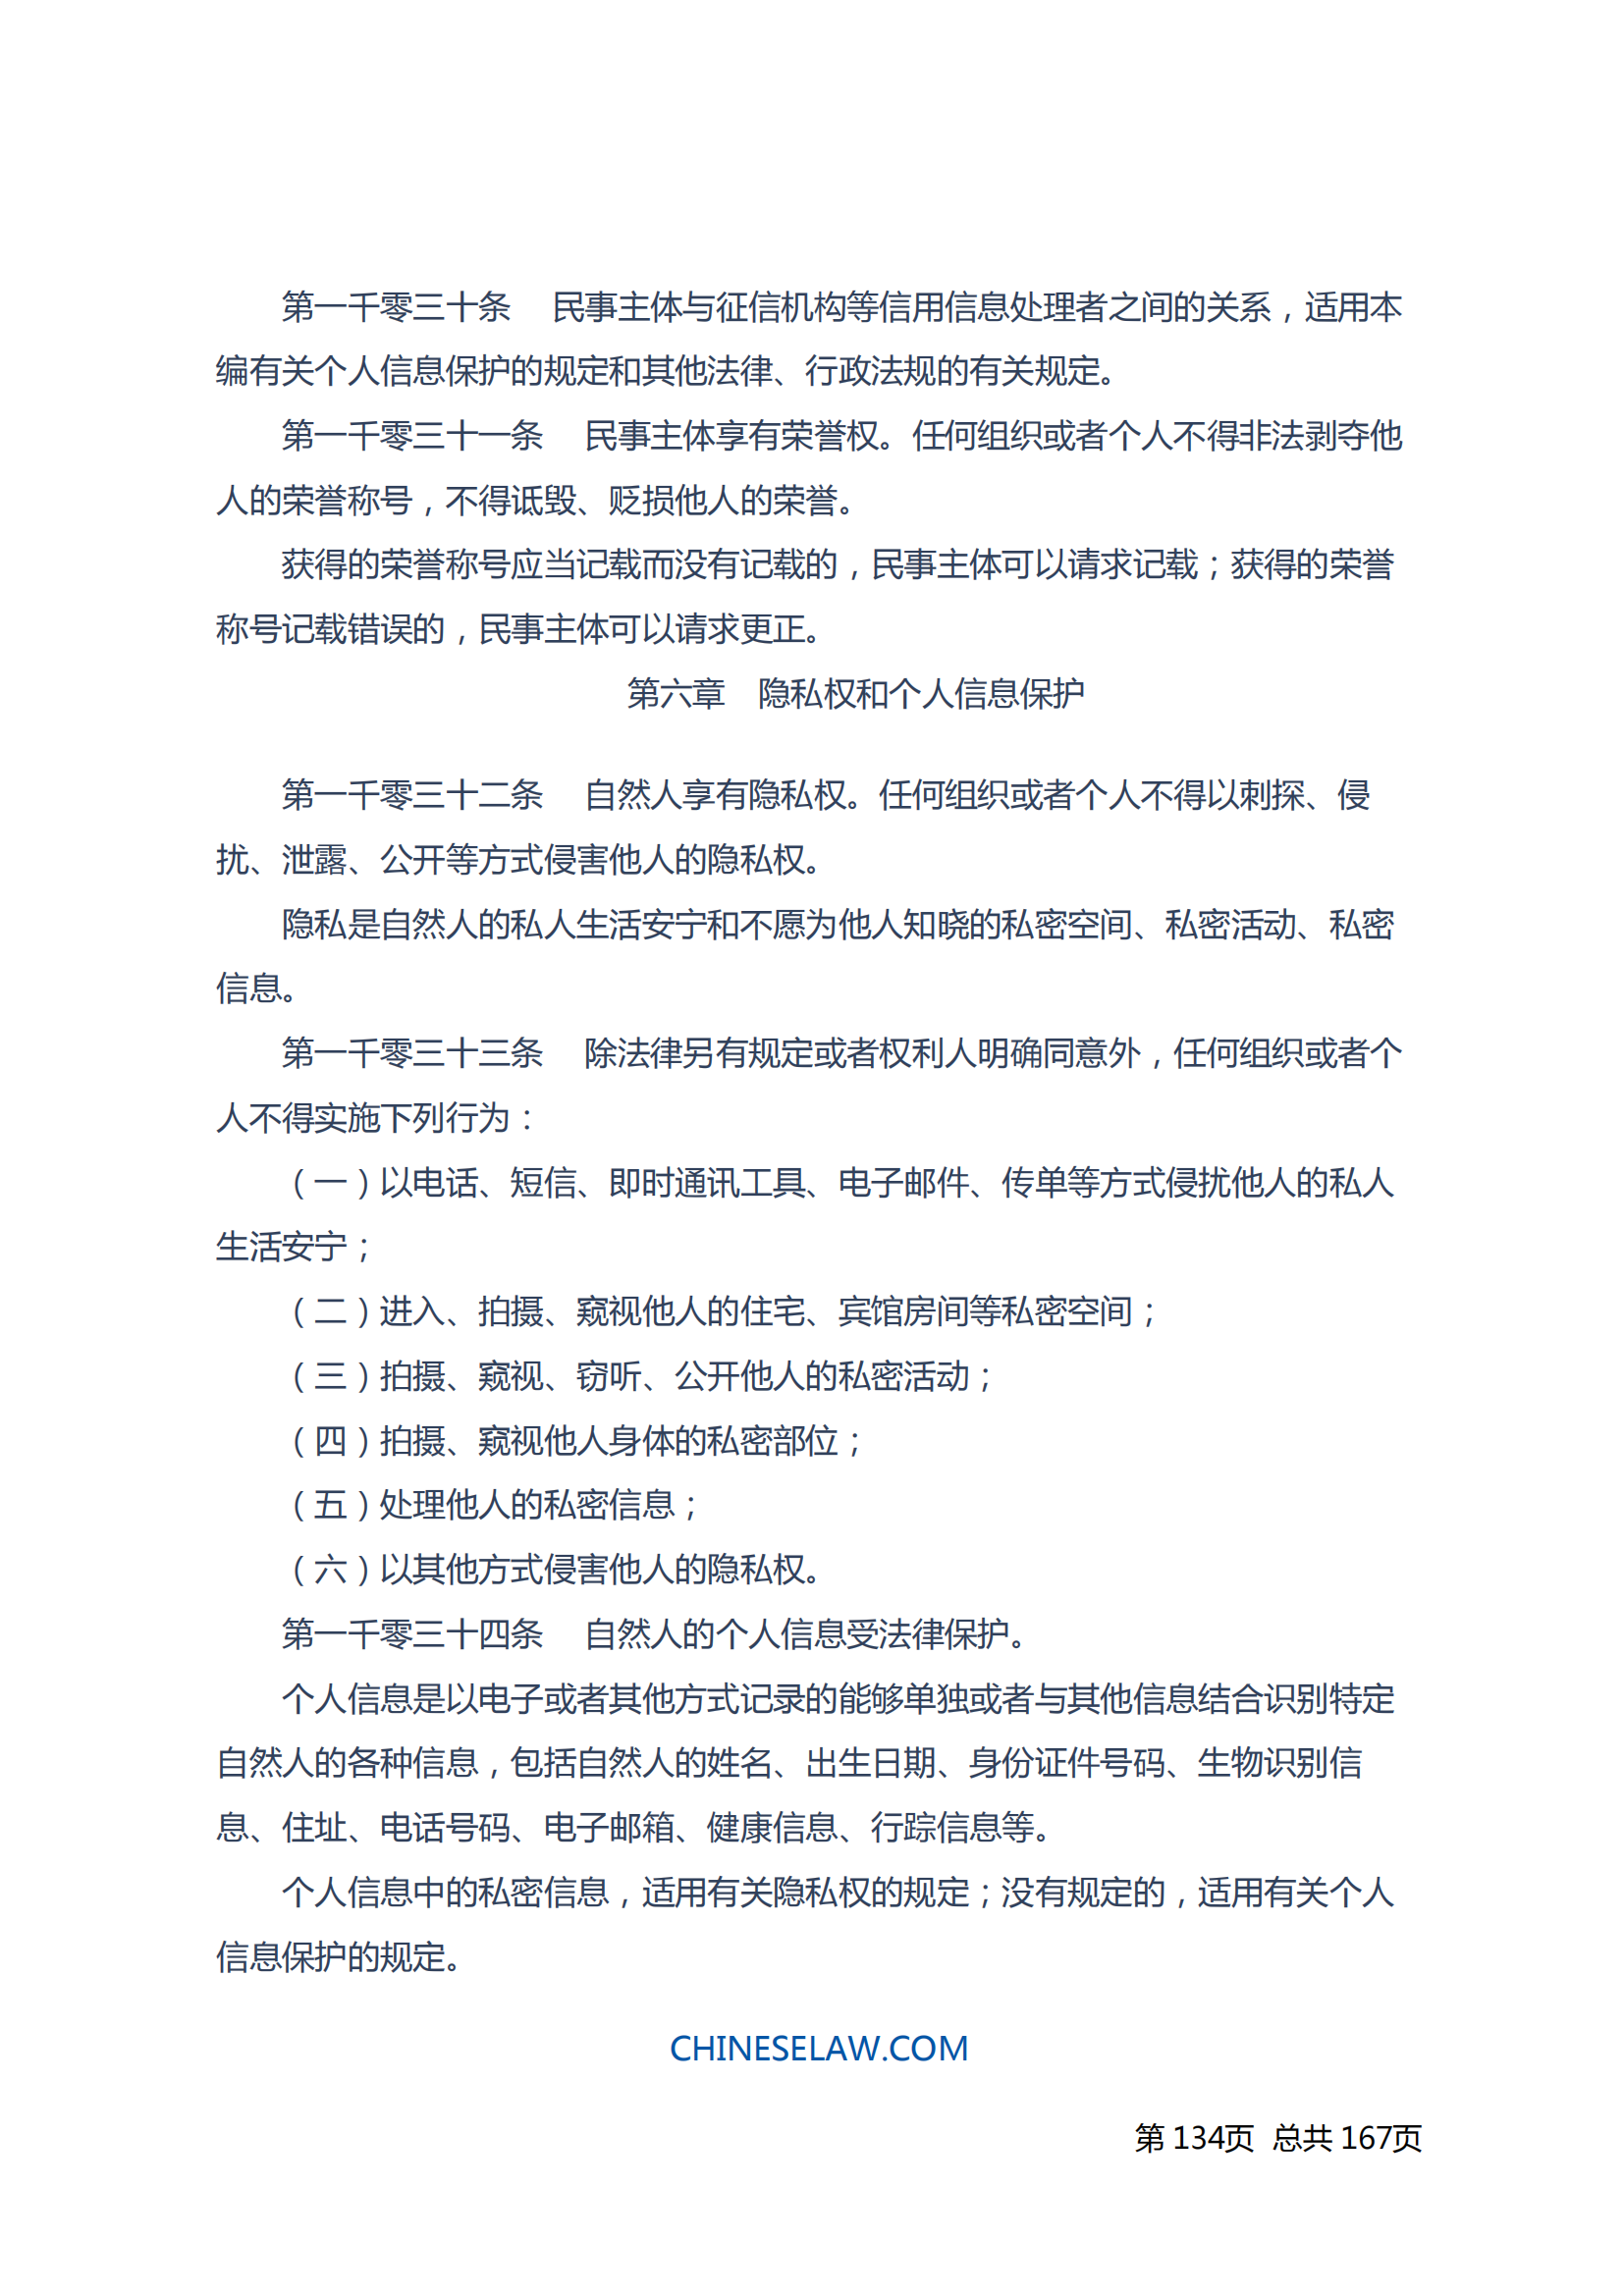 中华人民共和国民法典_133